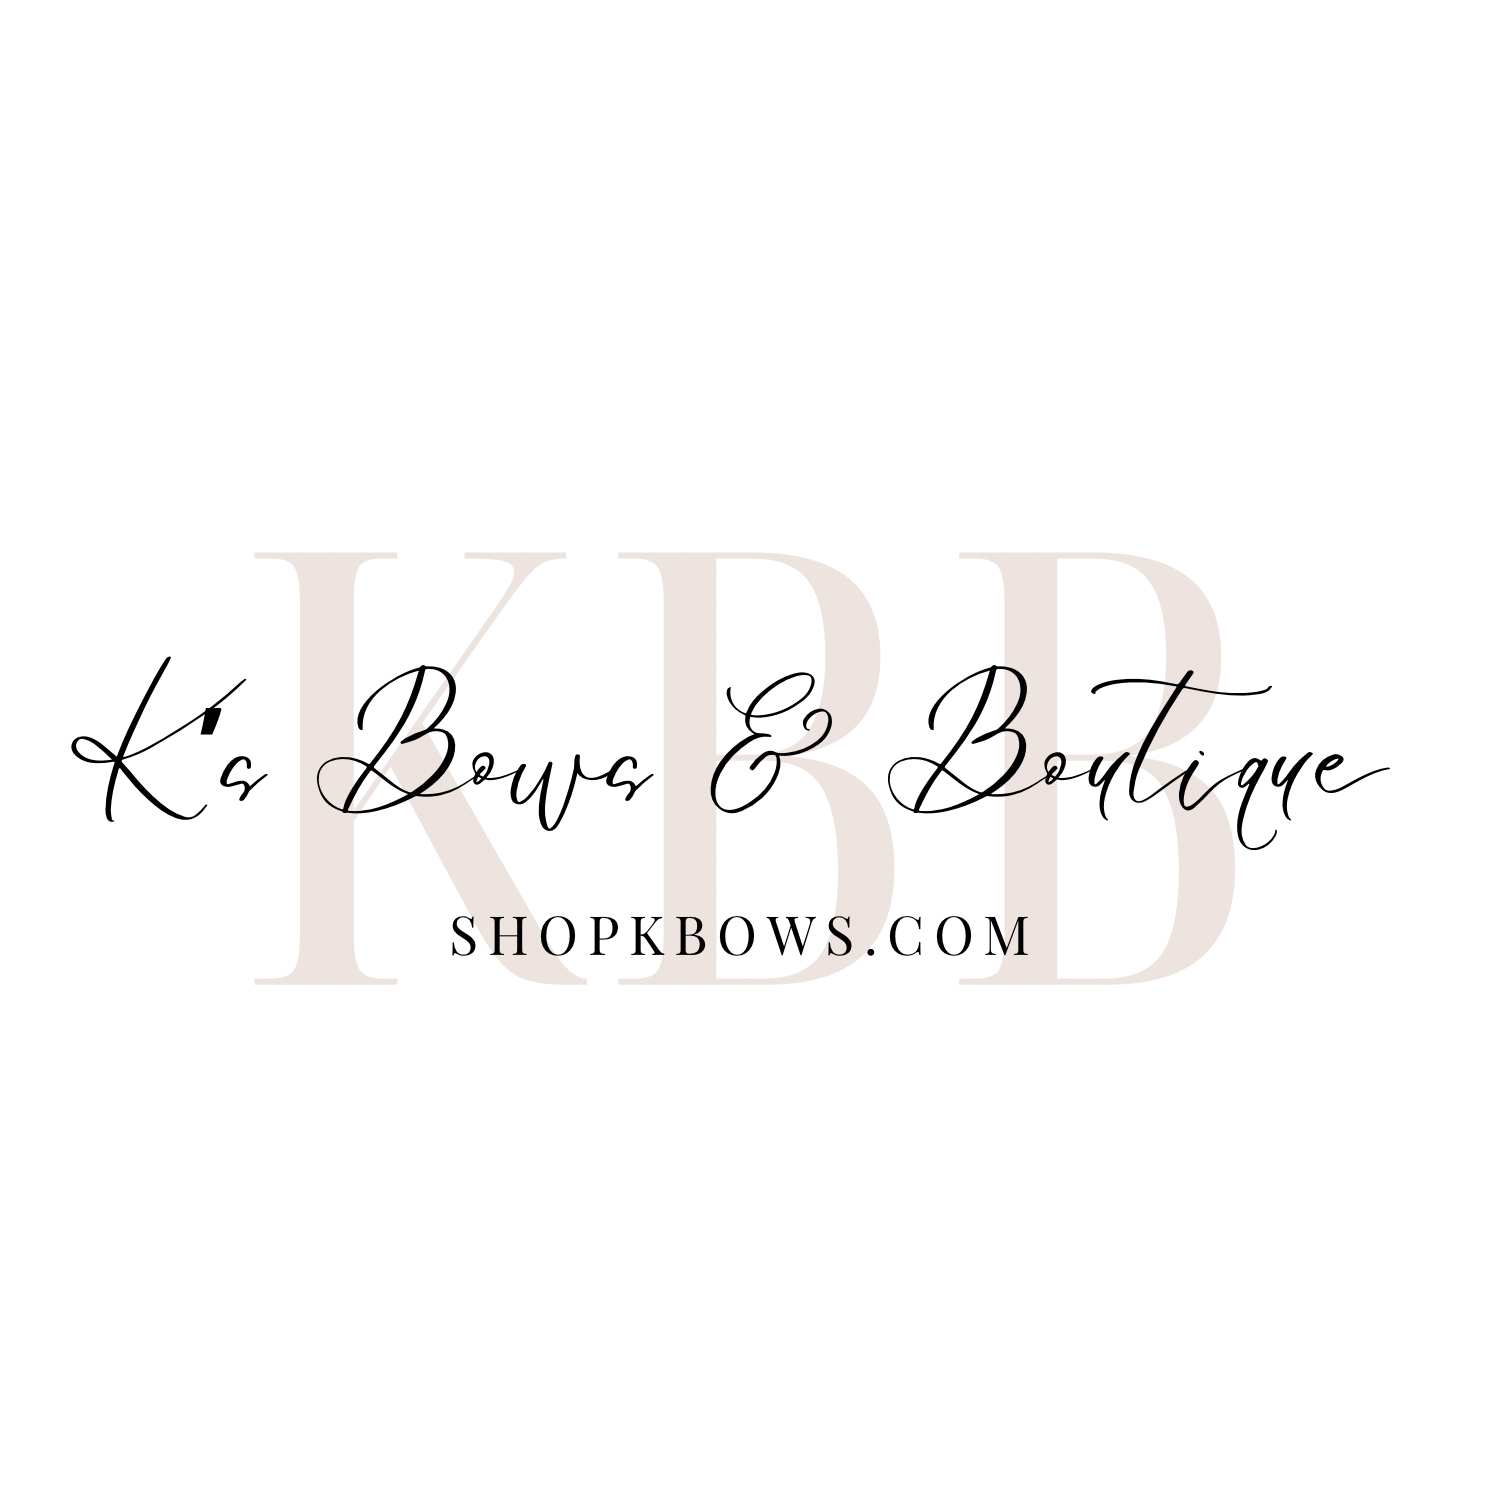 K’s Bows & Boutique